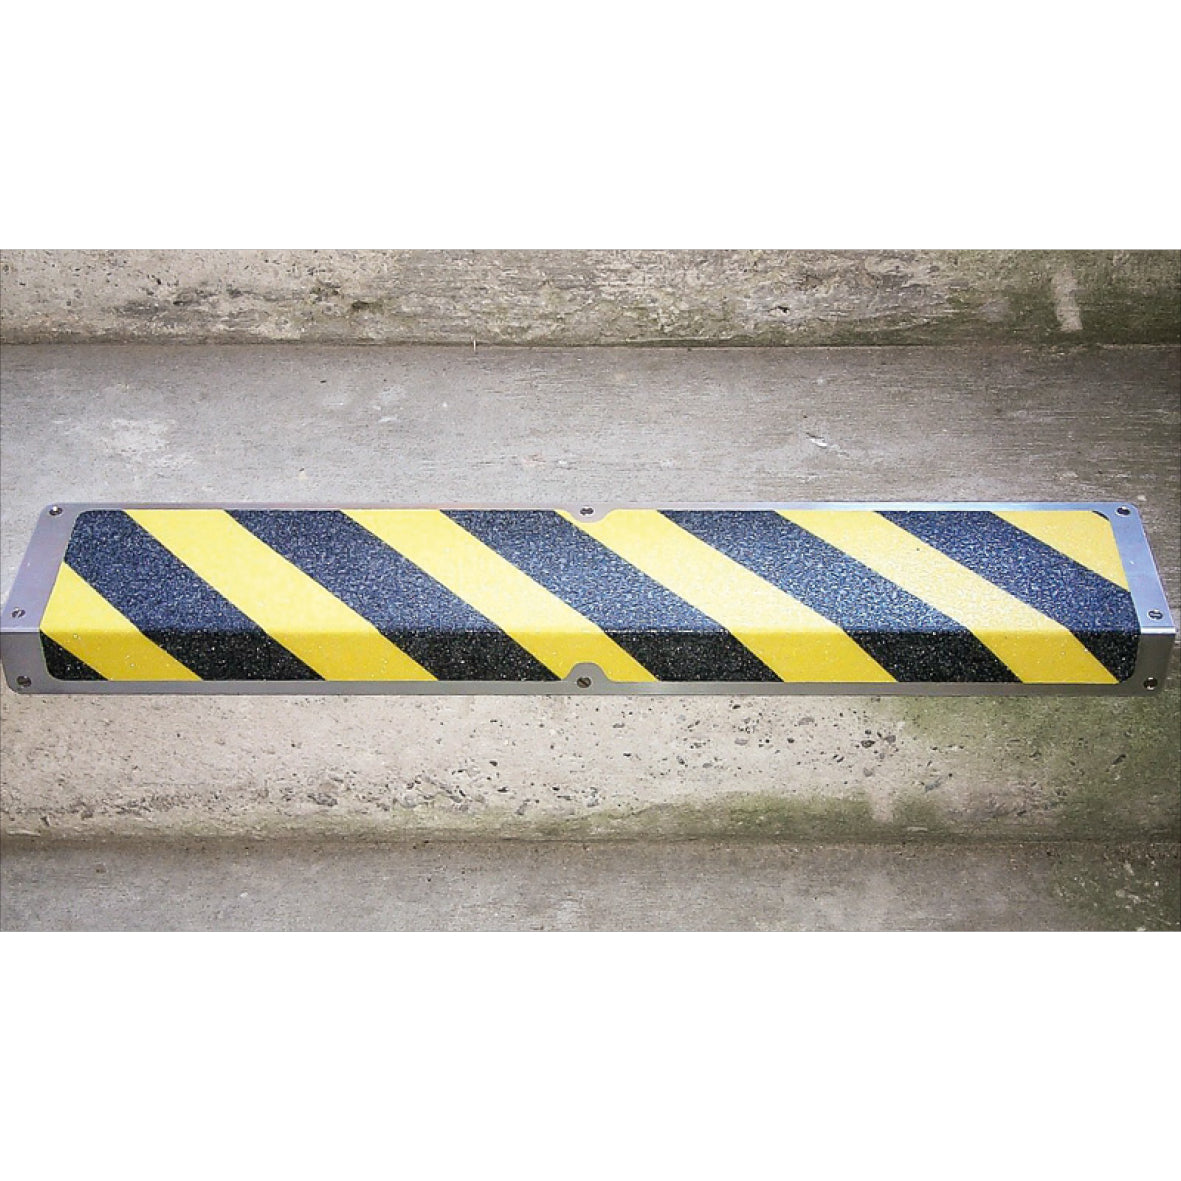 Antirutsch Treppkante Alu, "Caution" 120x635x45mm